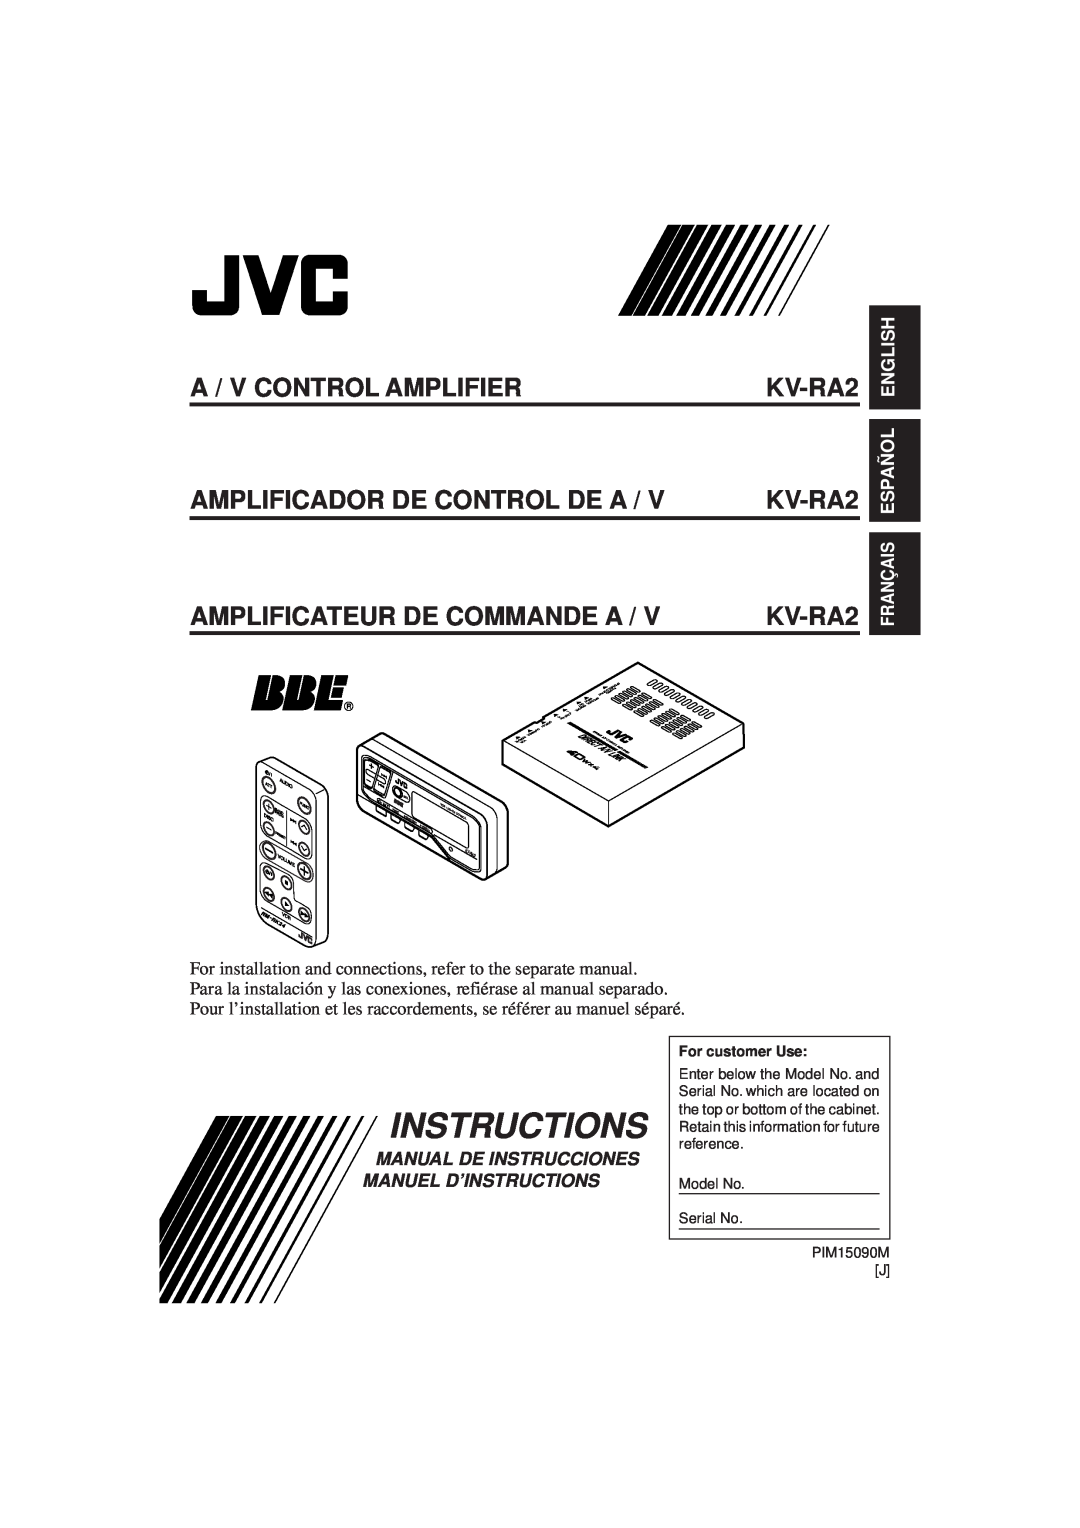 JVC KV-RA2 manual Instructions, A / V Control Amplifier, Amplificador De Control De A, Amplificateur De Commande A 